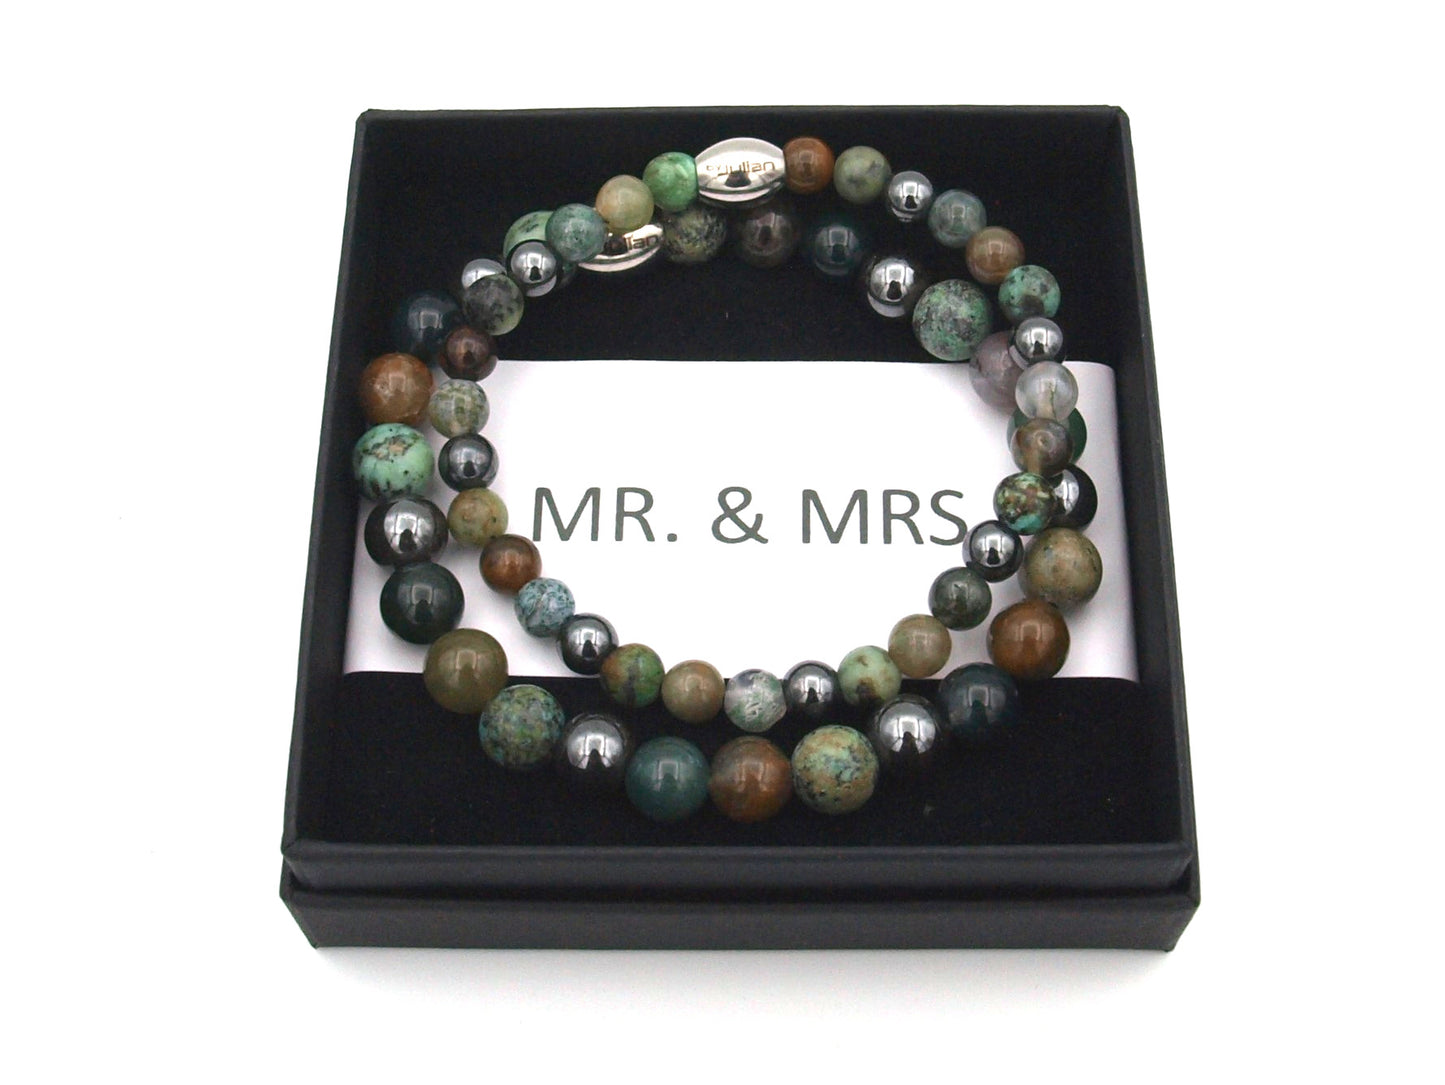 Mr. & MRS. armbandenset groen